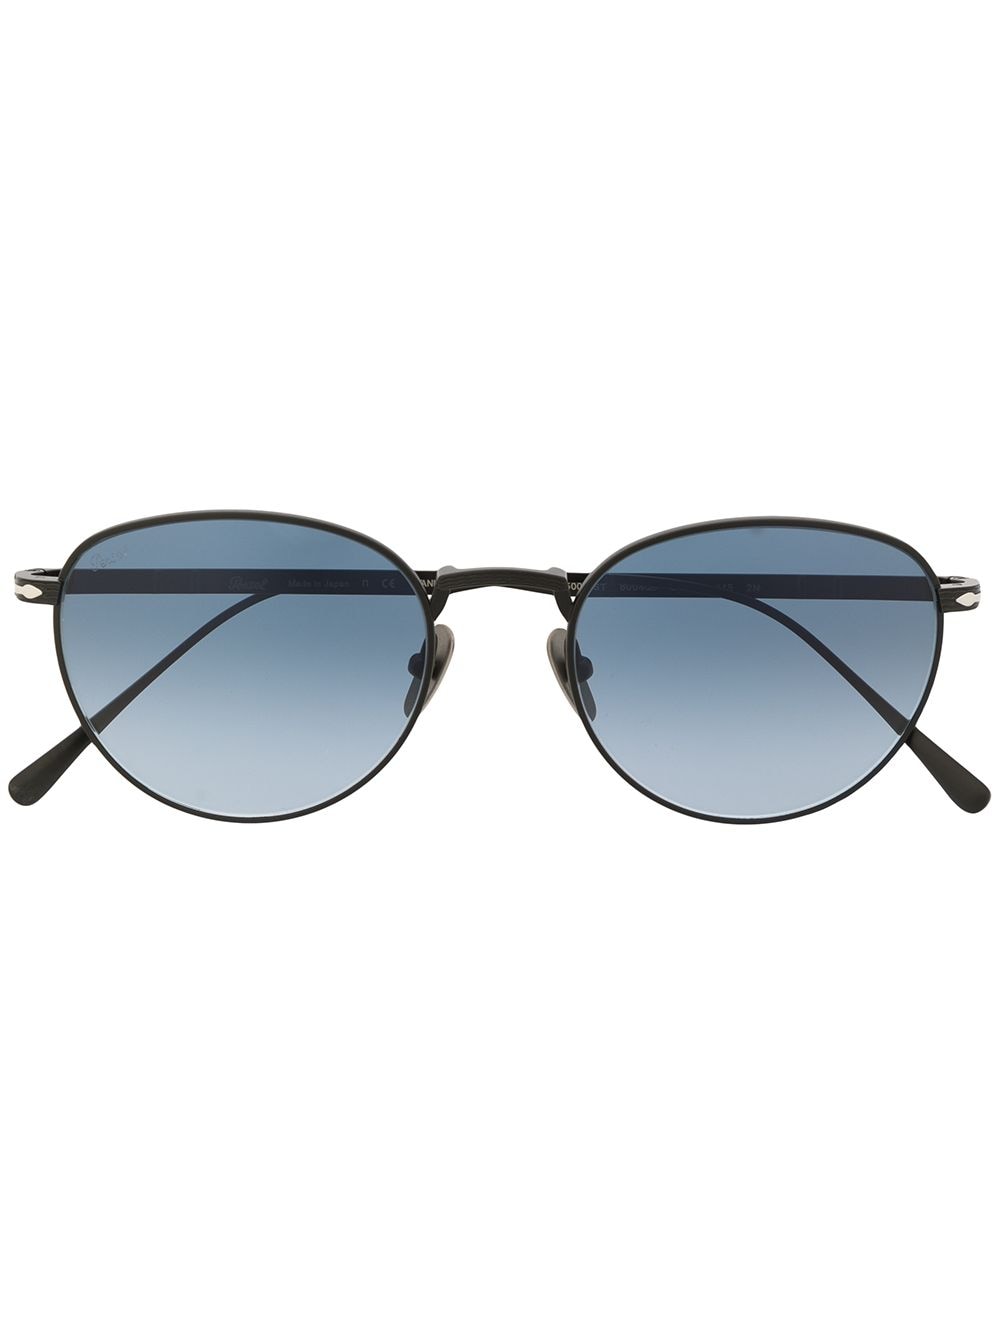 Persol Sonnenbrille mit rundem Gestell - Blau von Persol